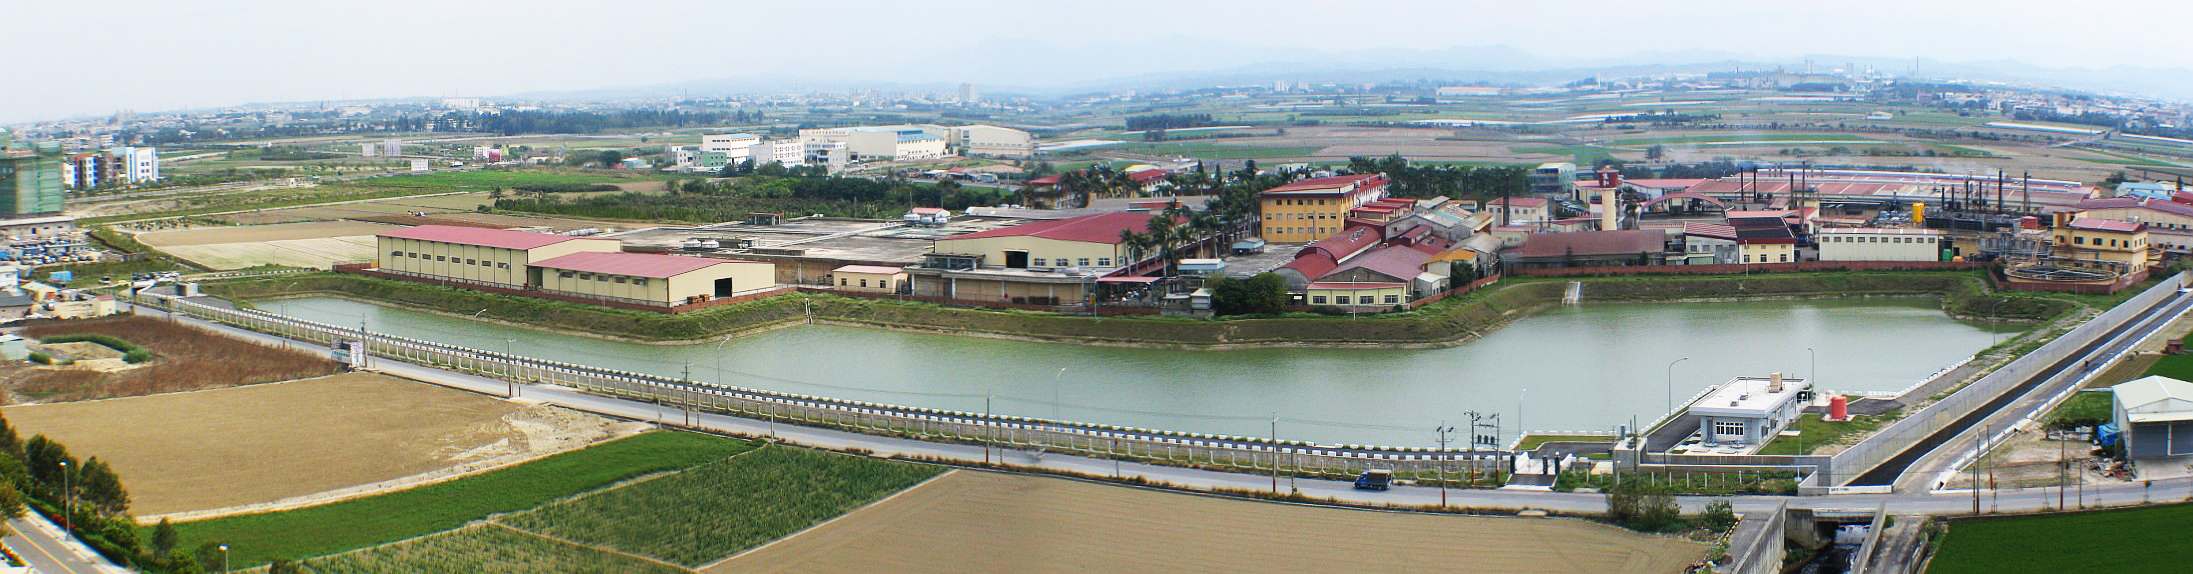 台南科學工業園區大社排水滯洪池